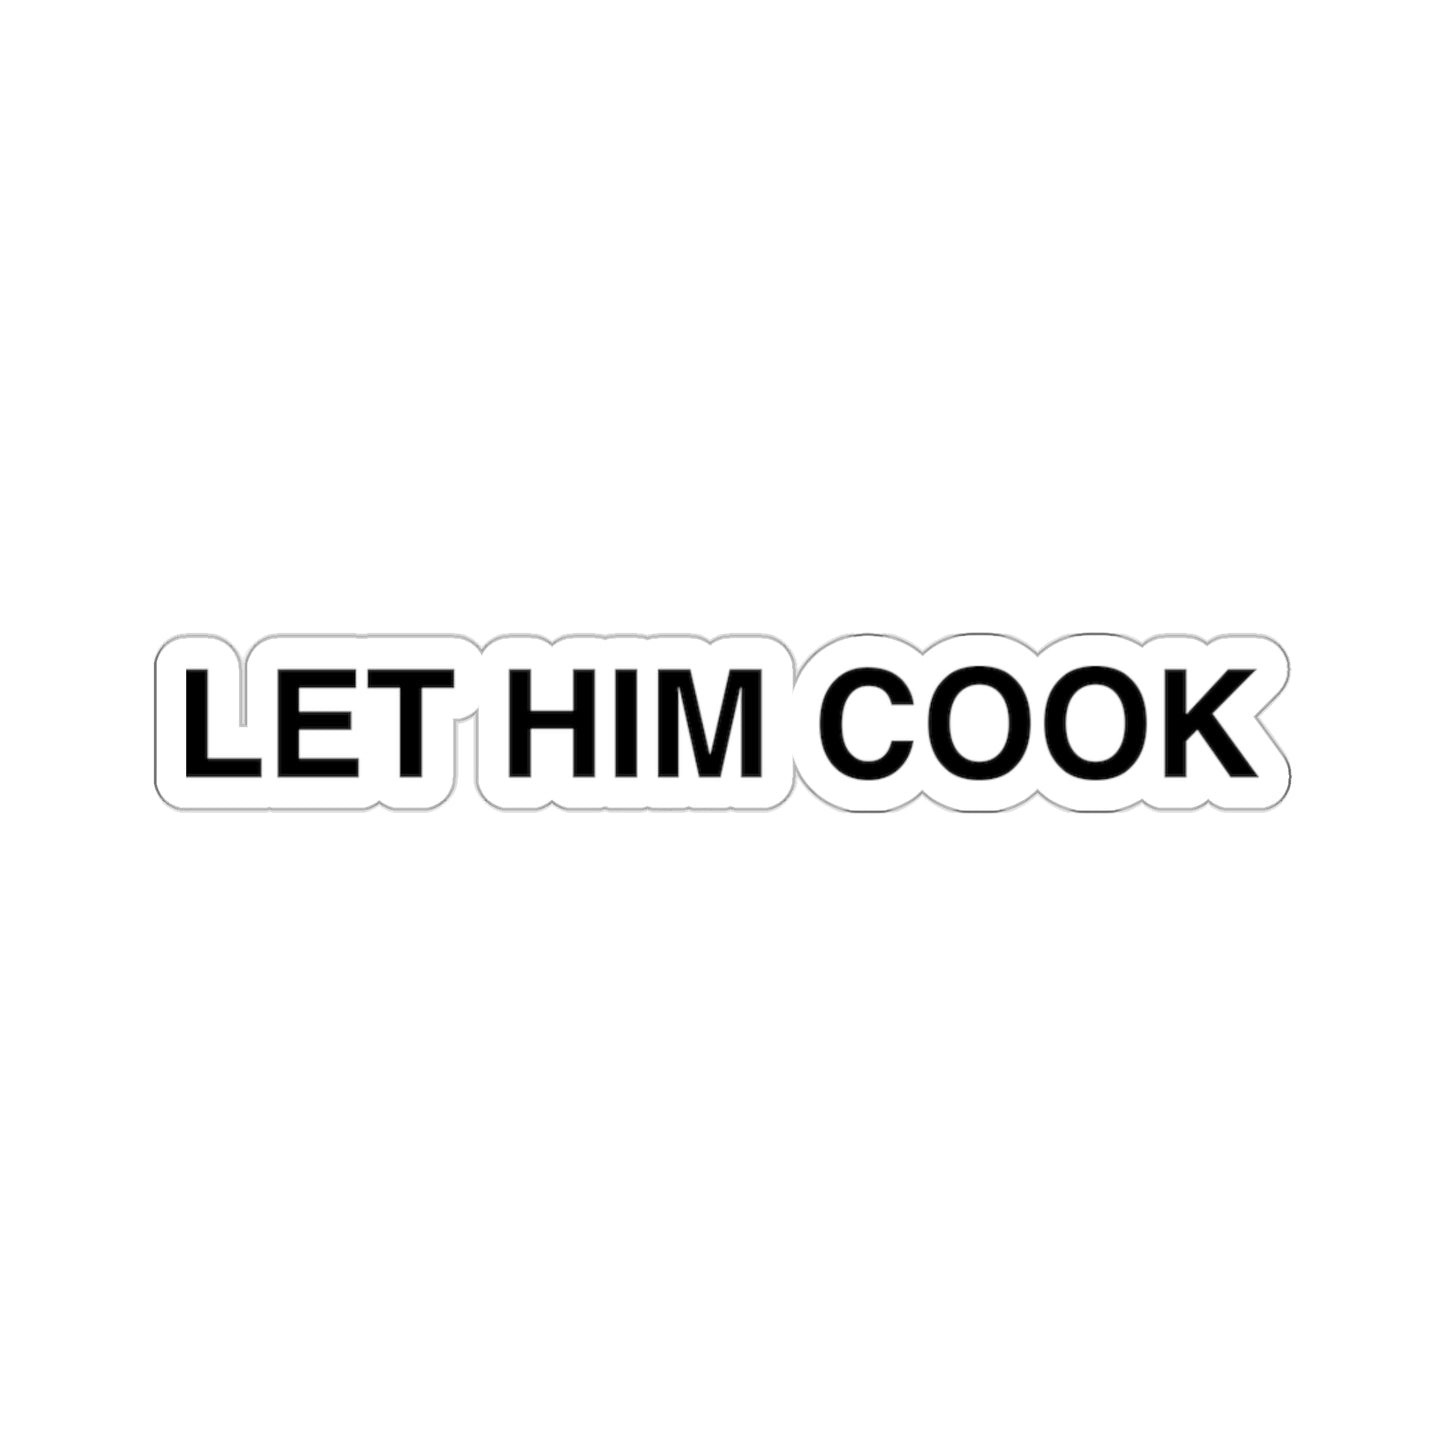 Let Him Cook, Funny Meme Sticker